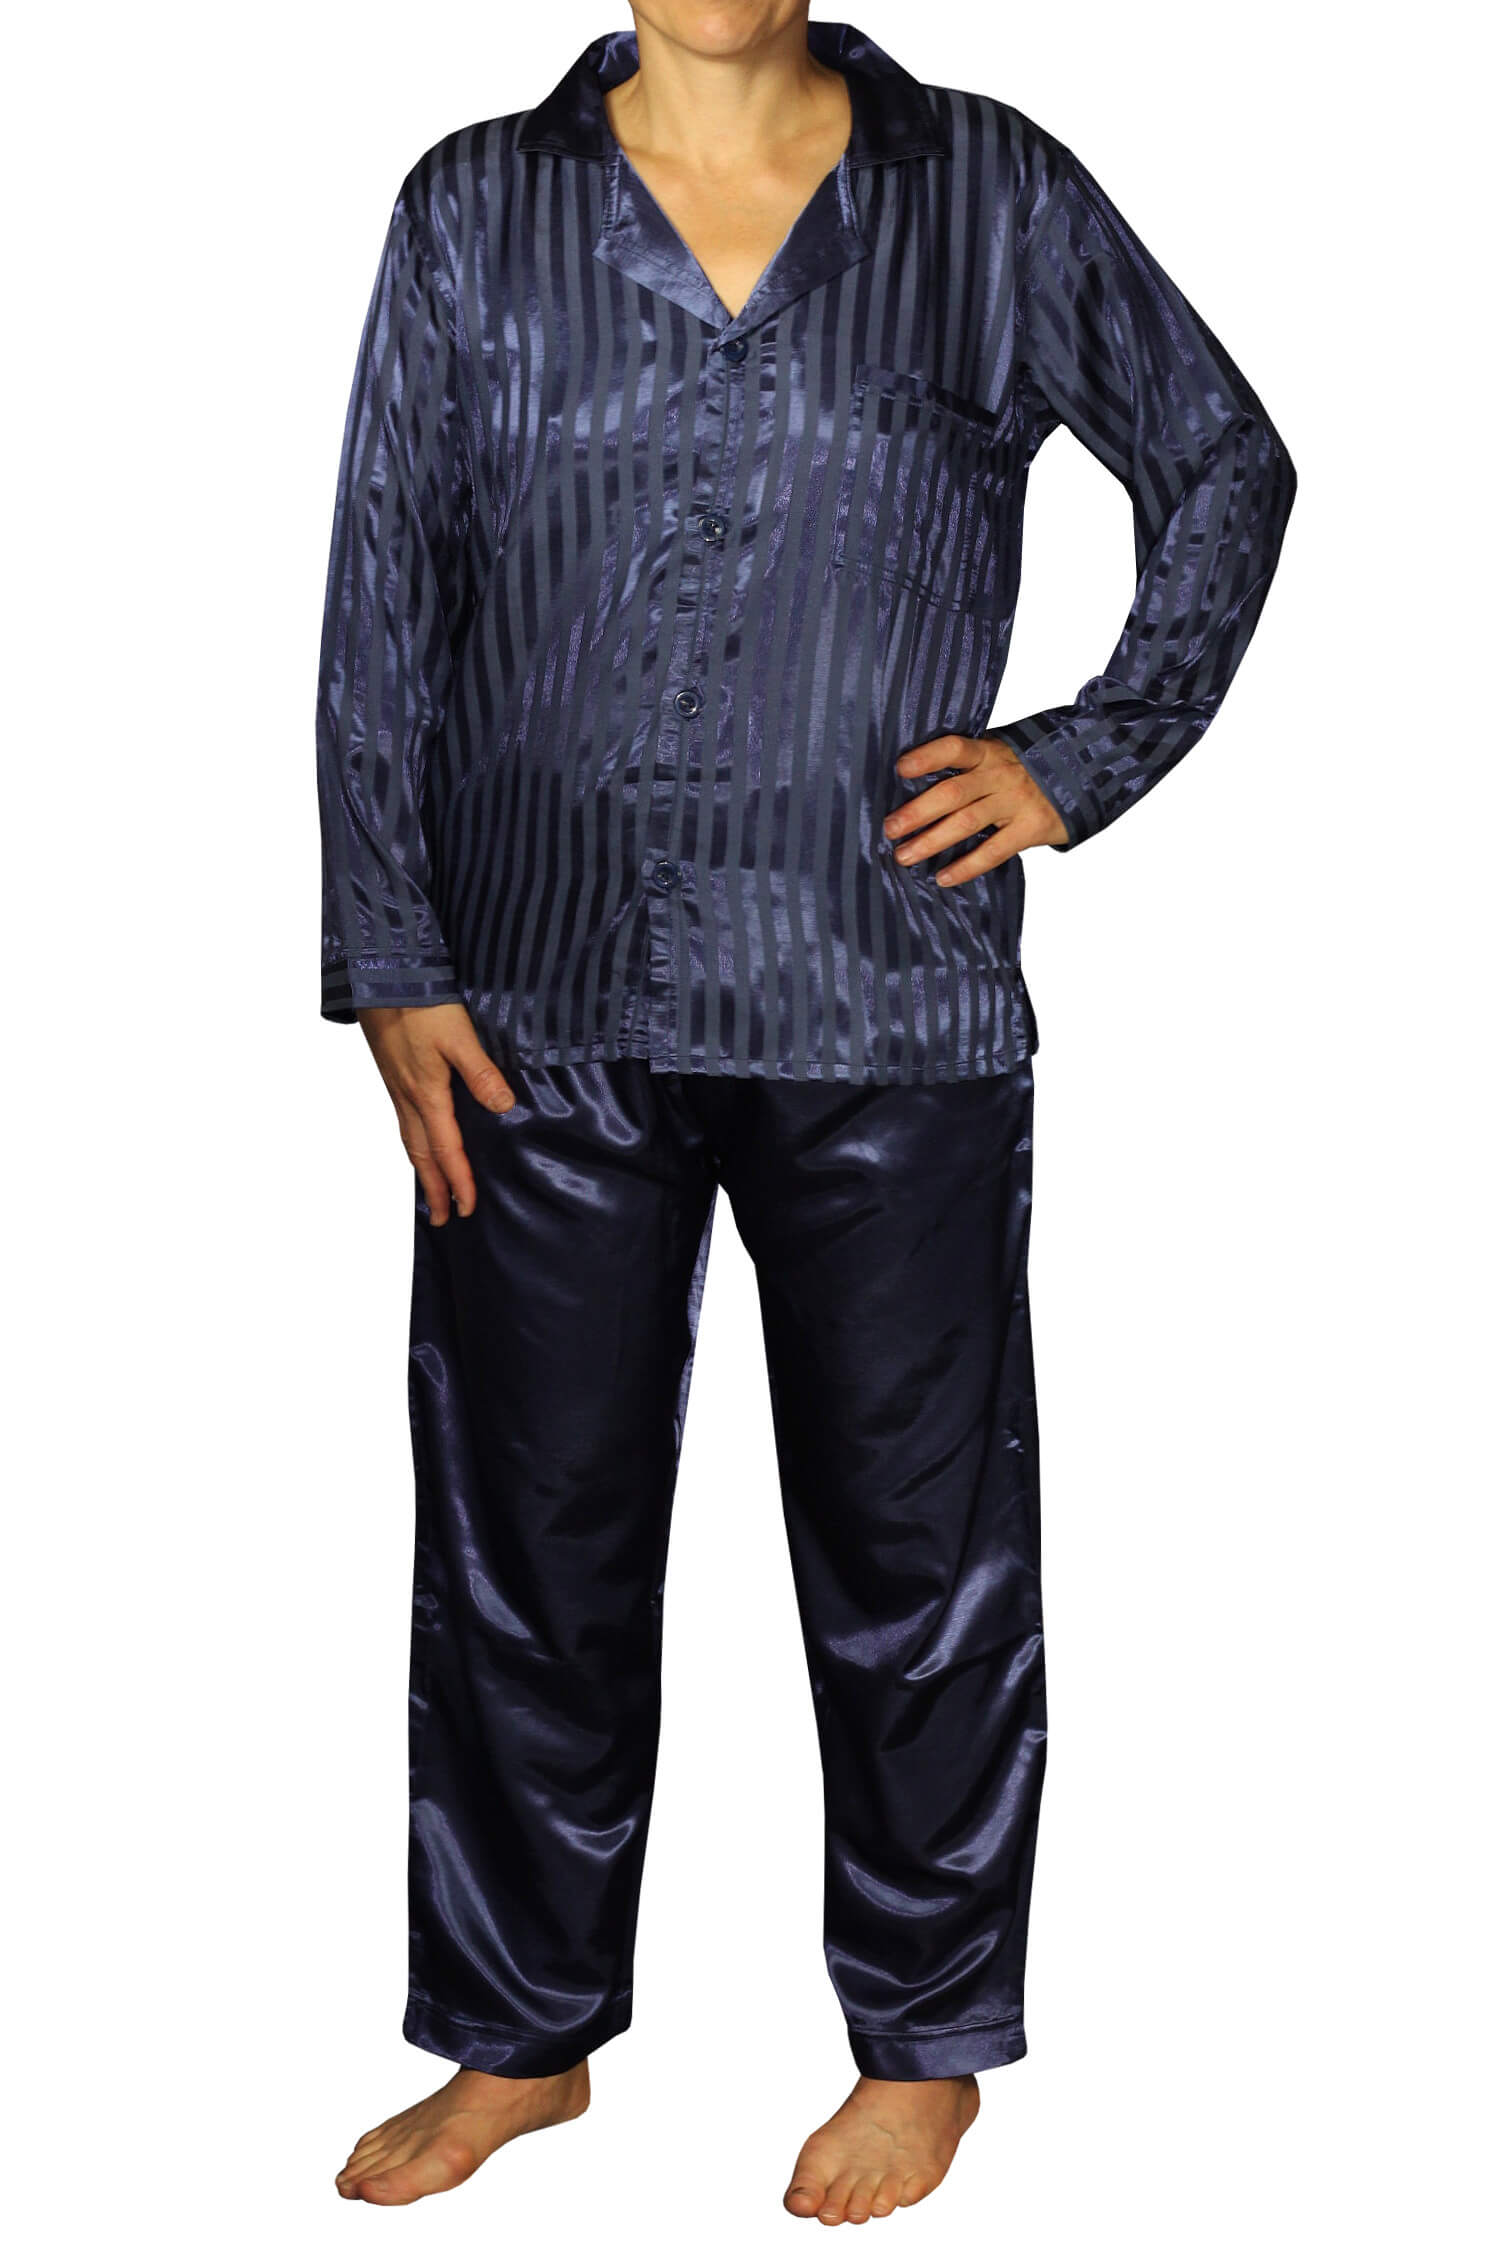 Zapata Satin pánské pyžamo proužky K150814 XL tmavě modrá